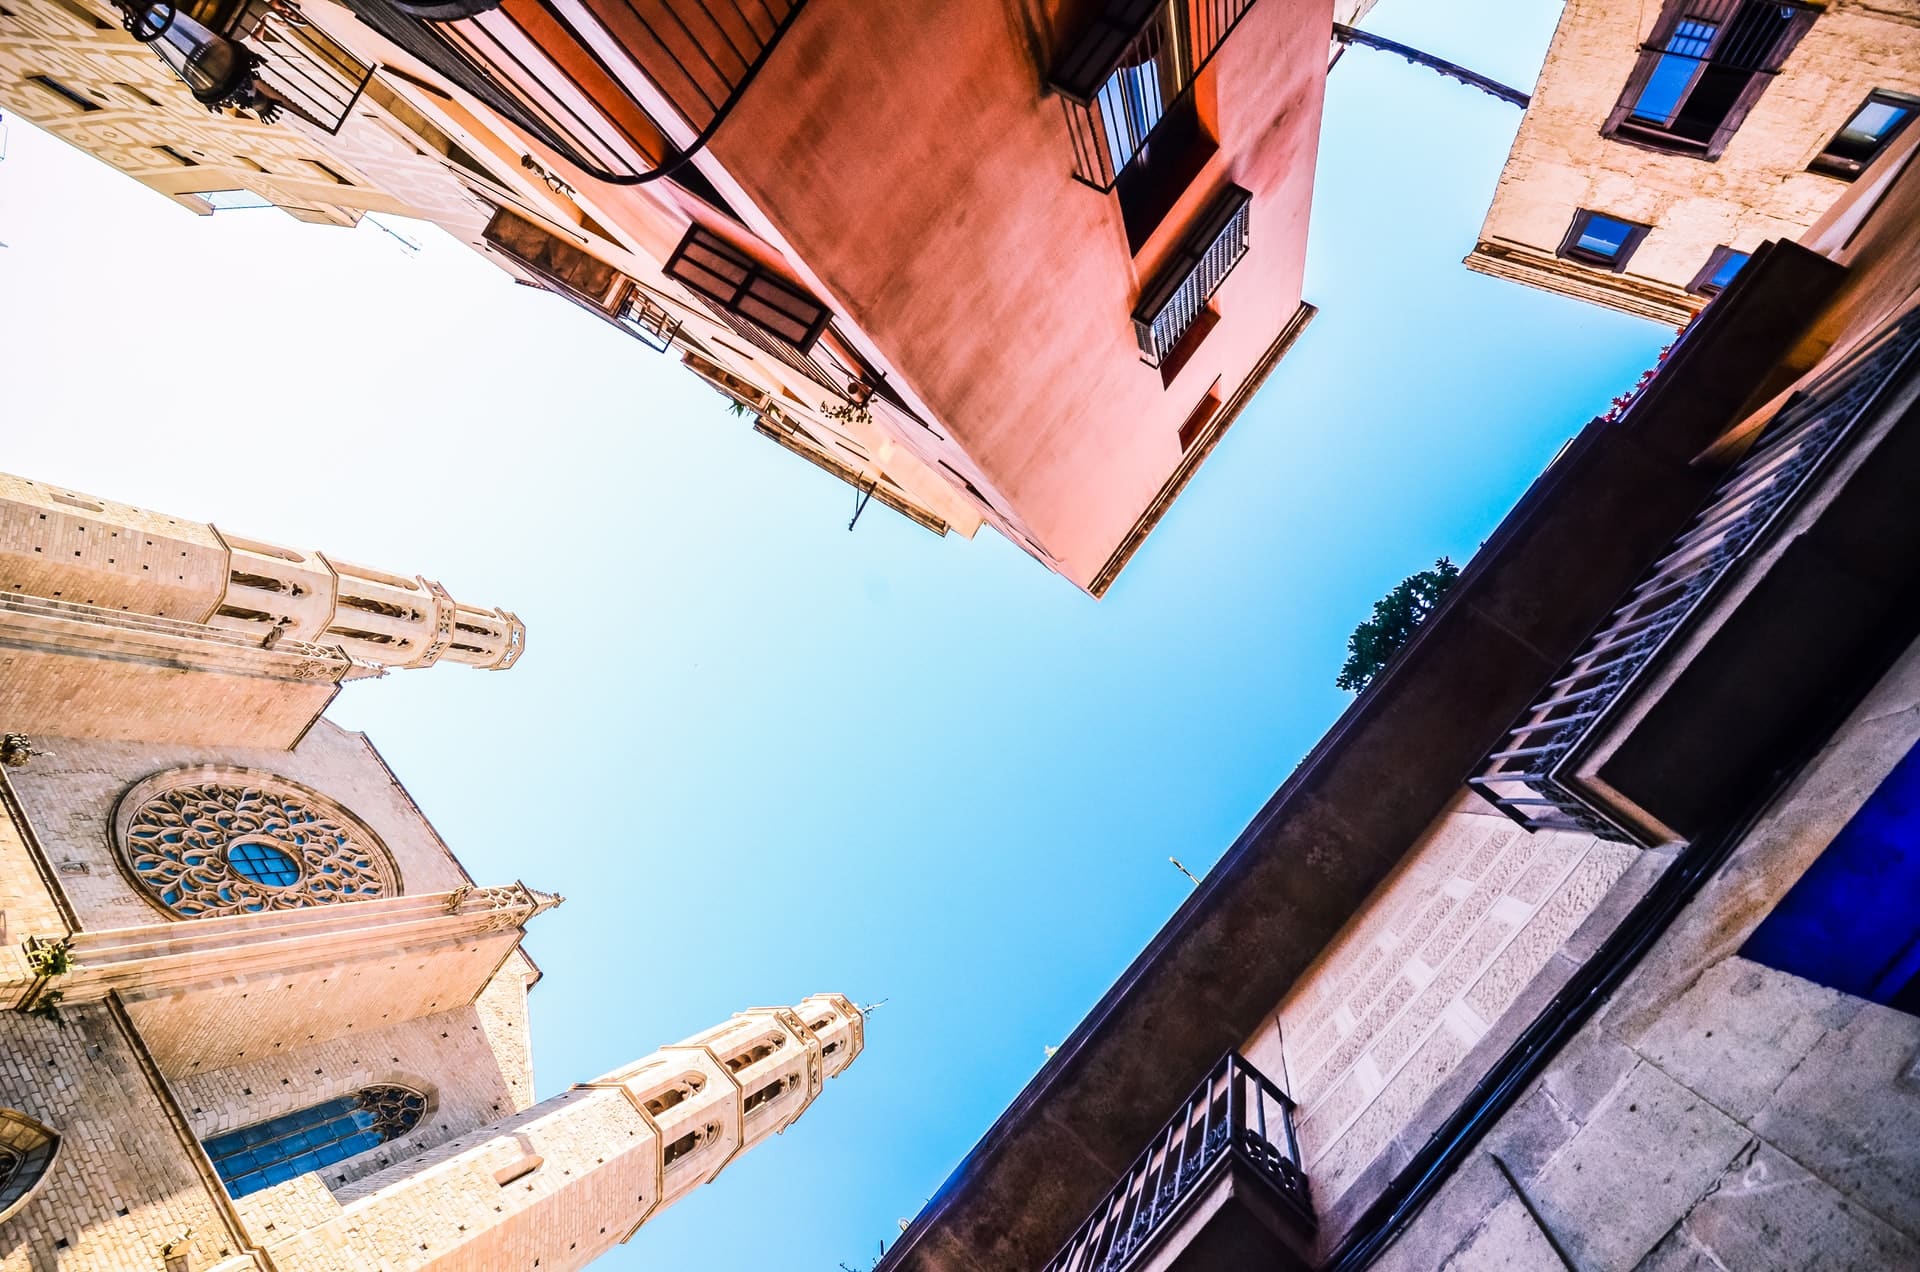 Sede della Chiesa di Santa María del Mar, del Museo Picasso e del Palau de la Música Catalana, El Born è un quartiere ricco di attrazioni e una delle migliori zone dove alloggiare a Barcellona.